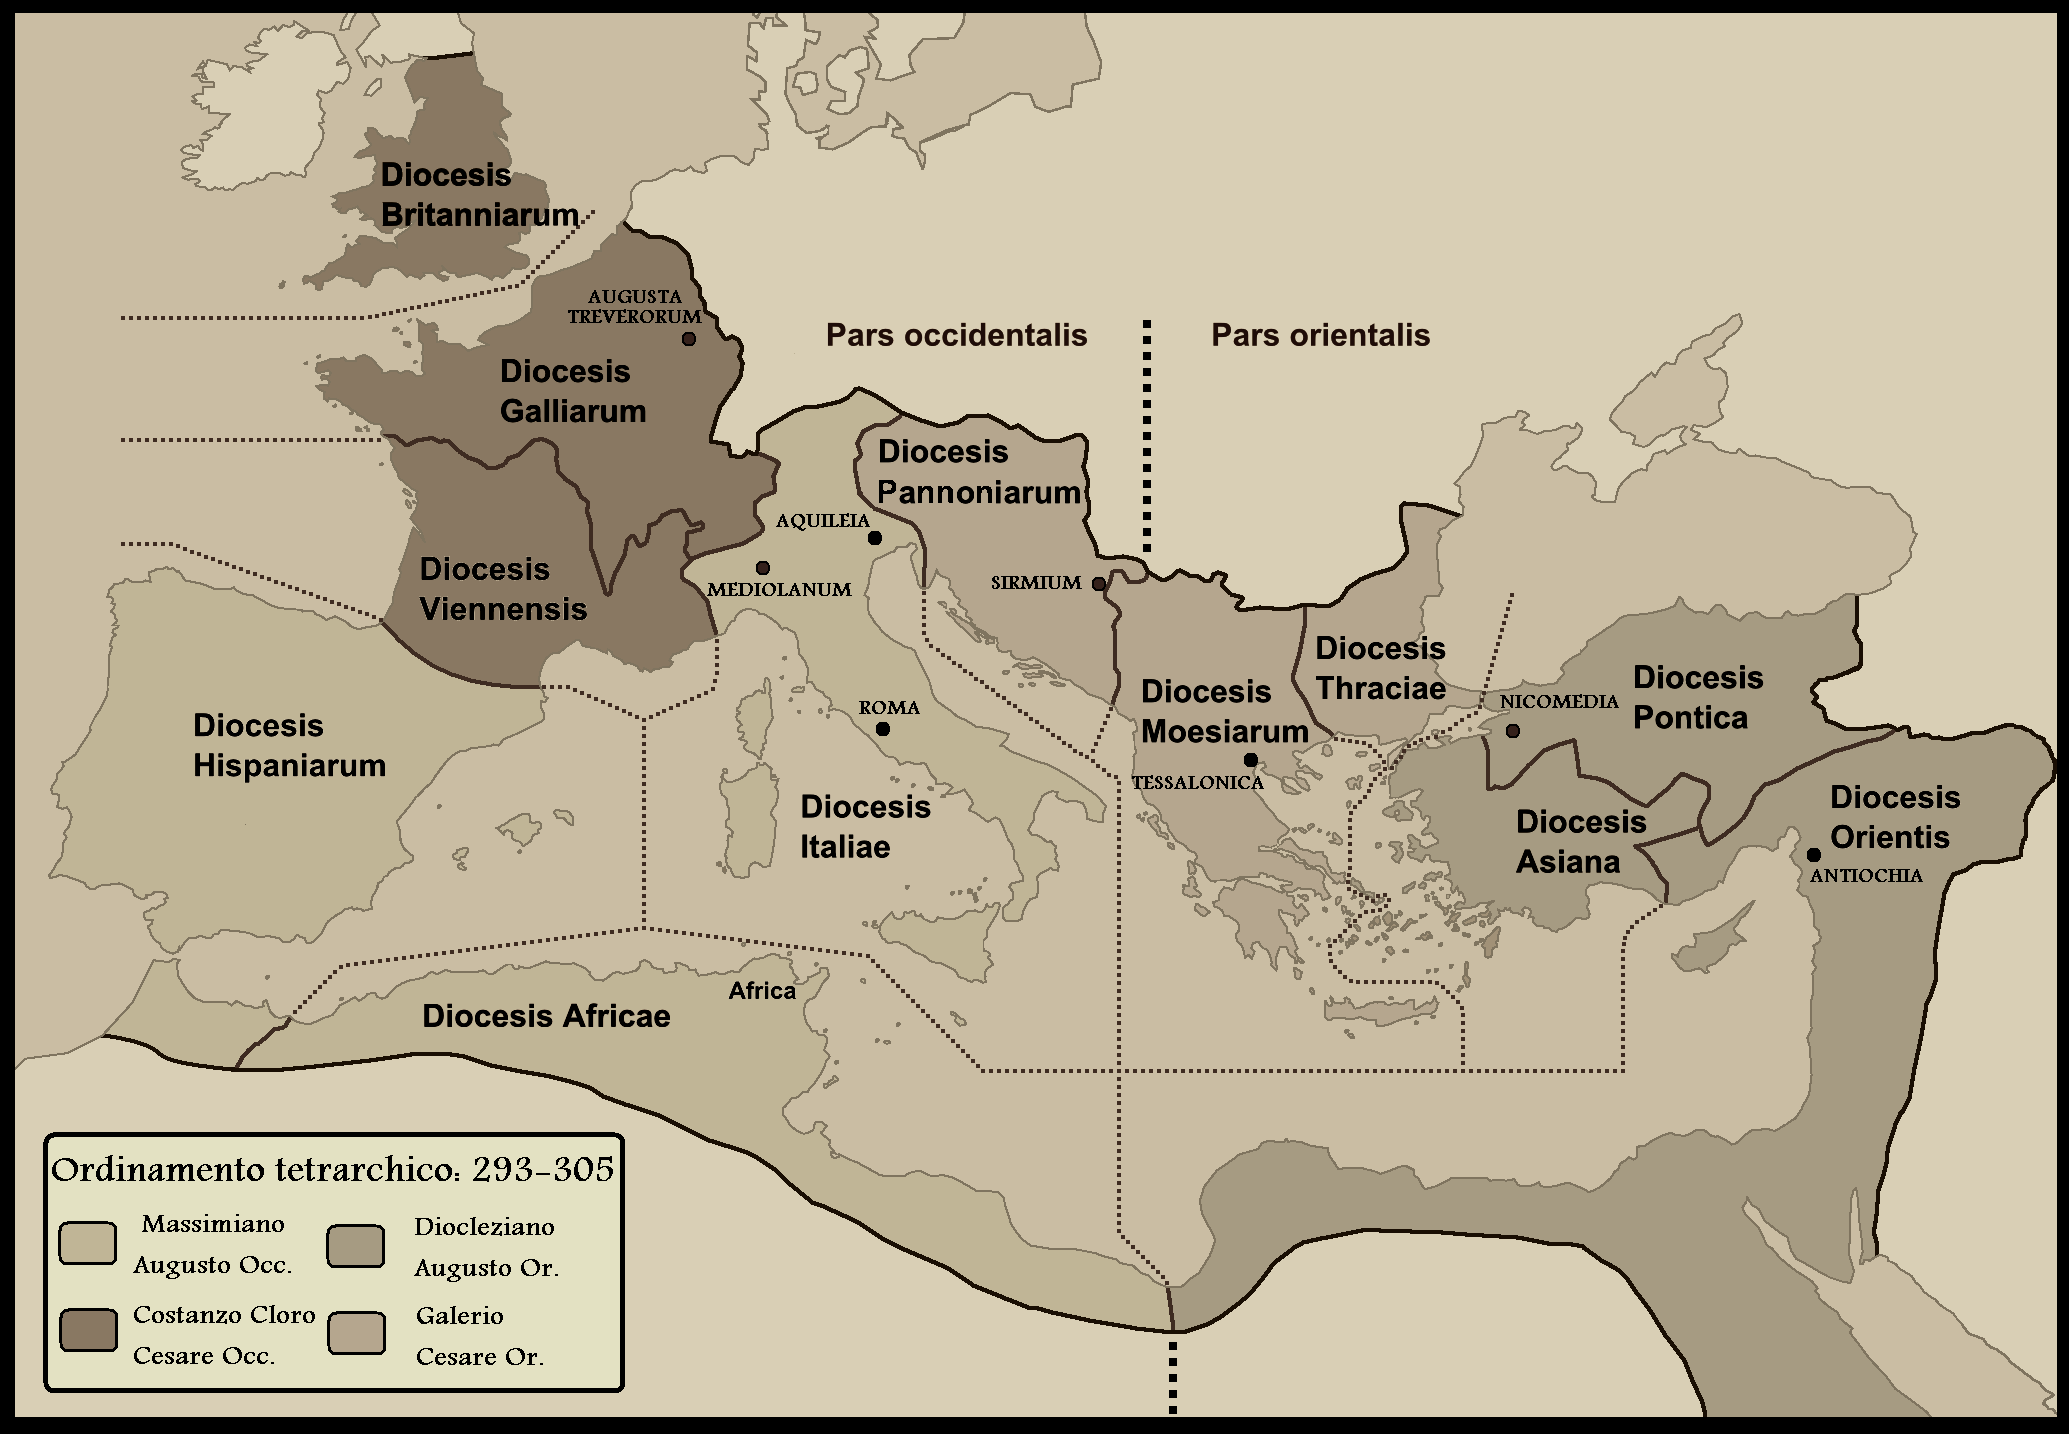 La suddivisione tetrarchica dell'Impero romano sancita nel 293 e che sarebbe rimasta immutata fino al 305: in ciascuna delle due parti un augusto e un cesare per reggere le "dioceses" amministrative